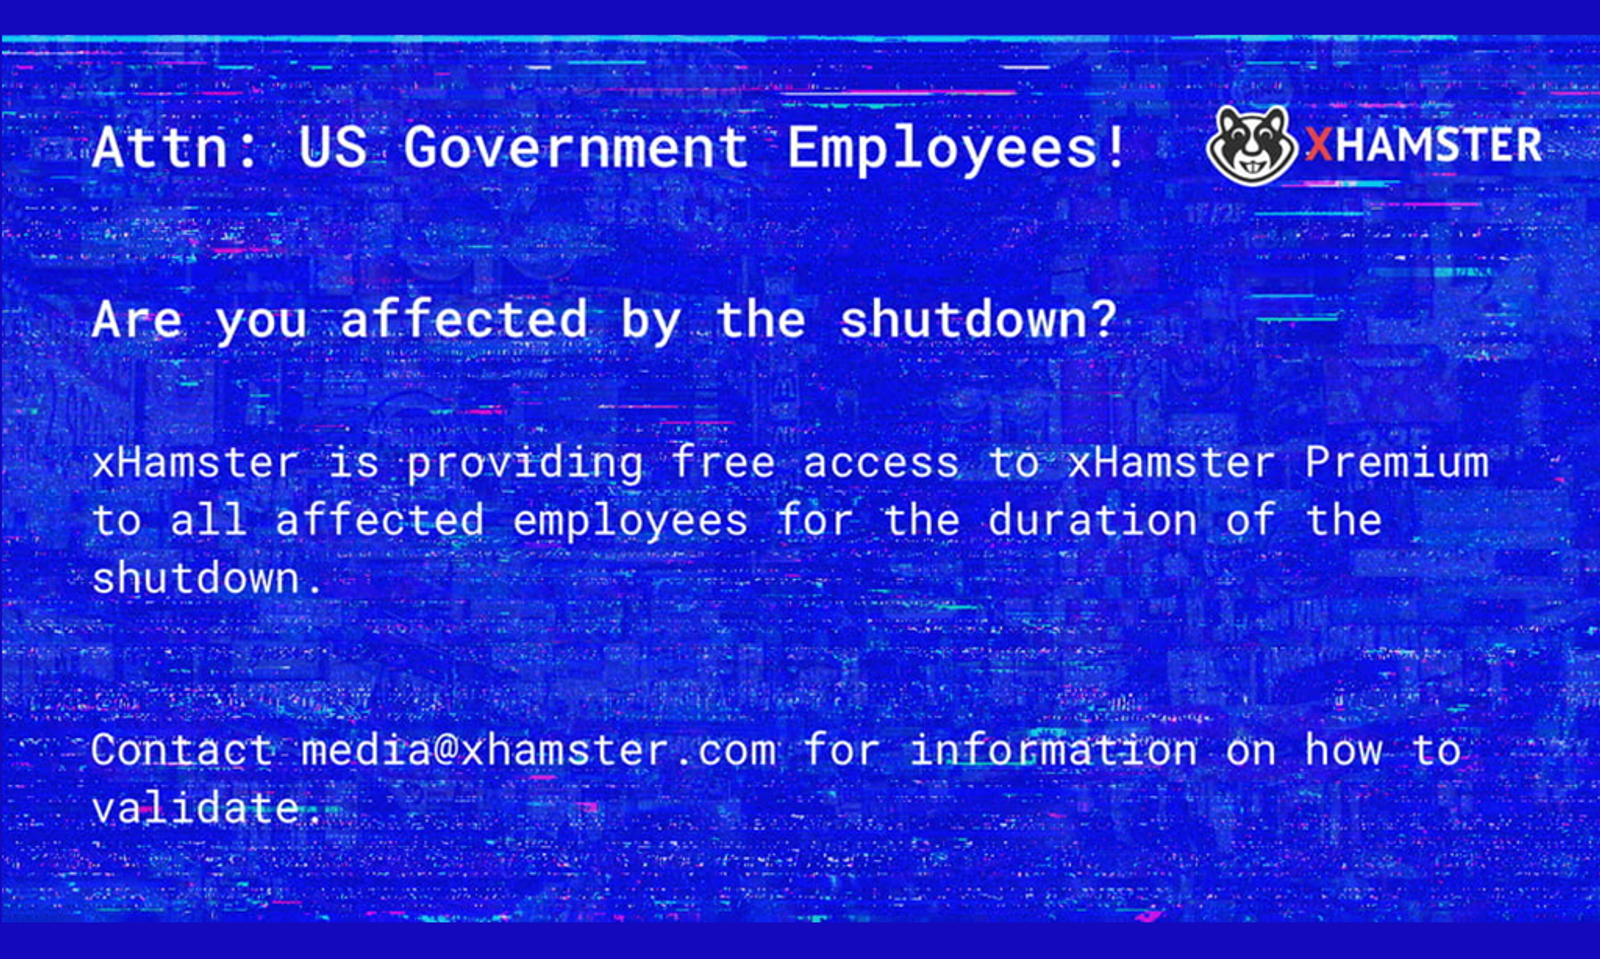 xHamster Grants #Shutdown Gov't Employees Free Access